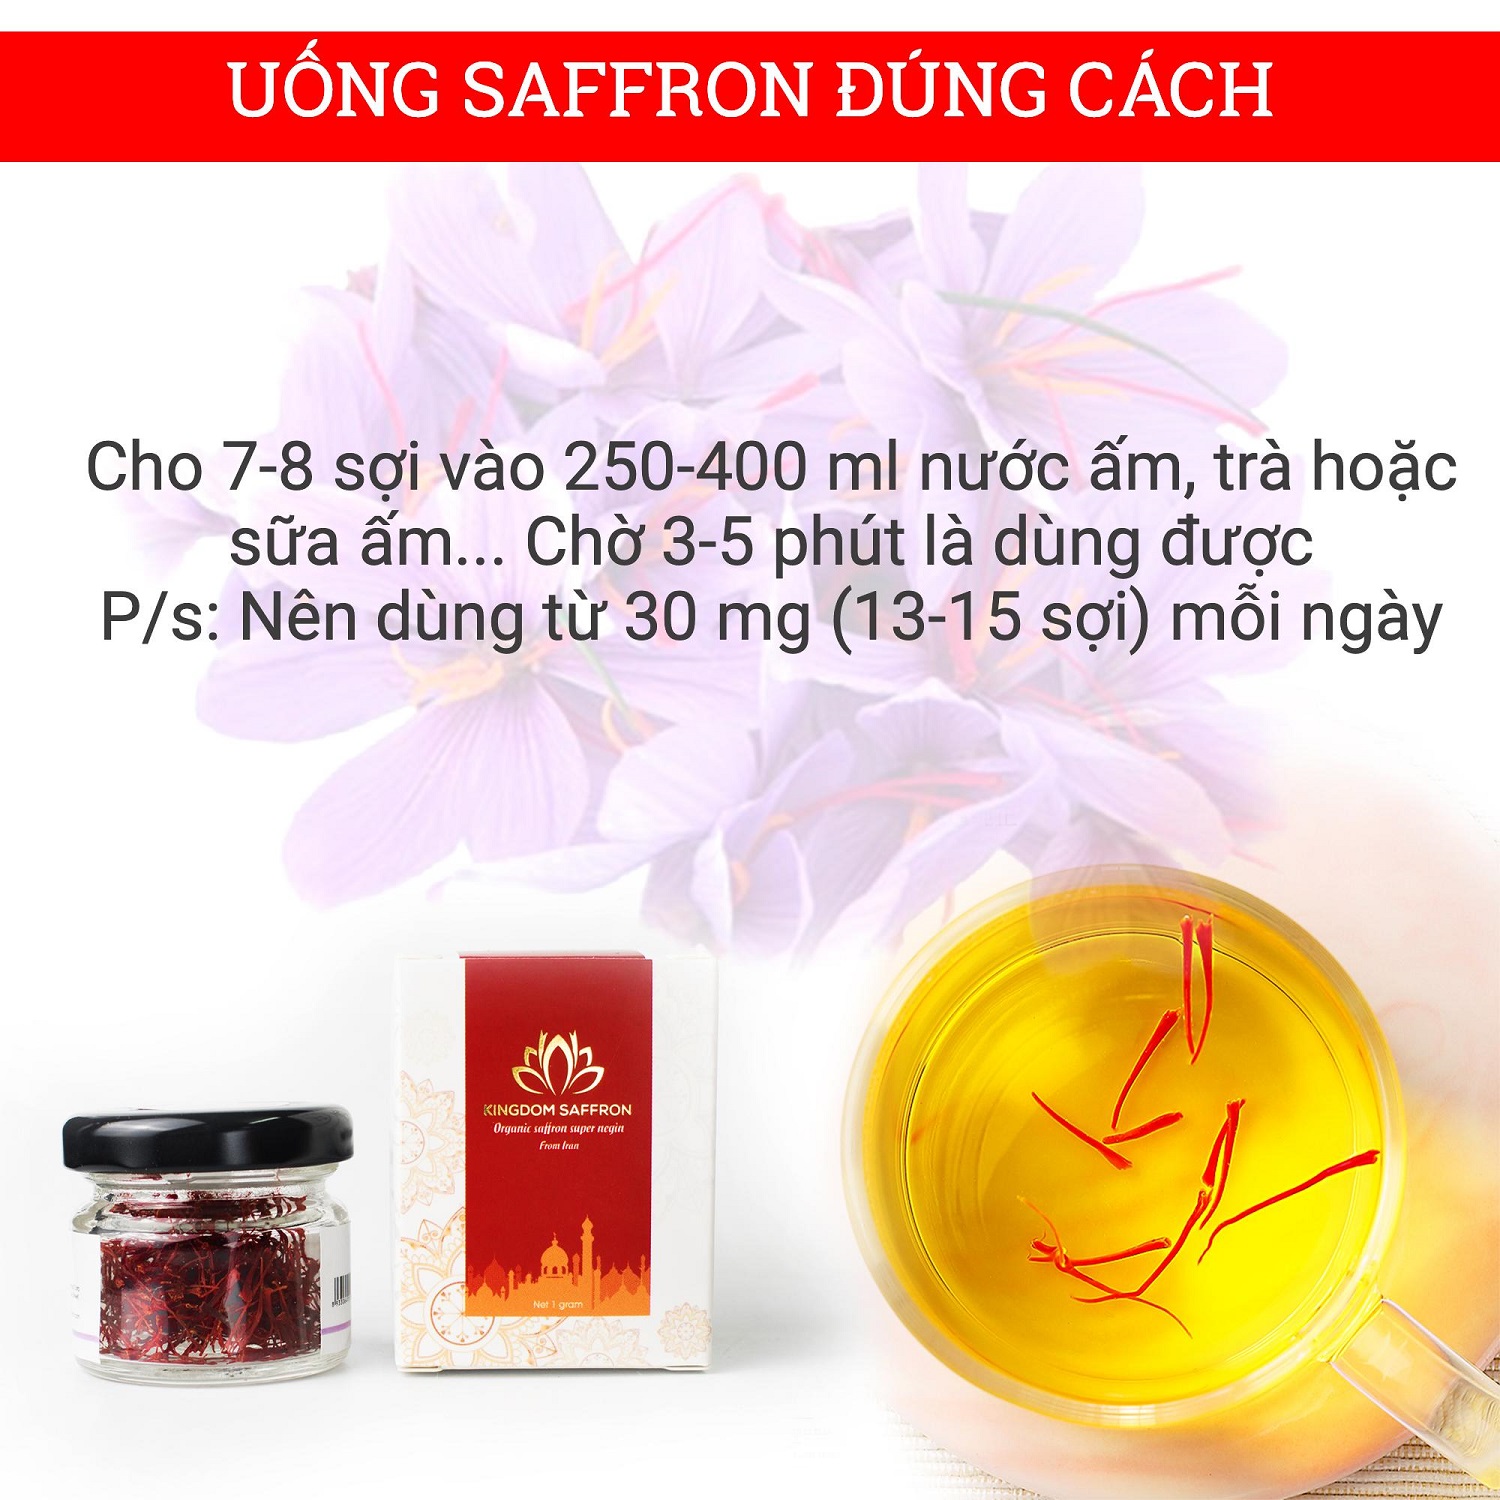 Combo 10 hộp (hộp/1gr) saffron Kingdom Herb, nhụy hoa nghệ tây Iran chính hãng super negin thượng hạng - Tặng 1 hộp saffron mật ong thượng hạng 40g và 1 bình nước thủy tinh cao cấp 500 ml